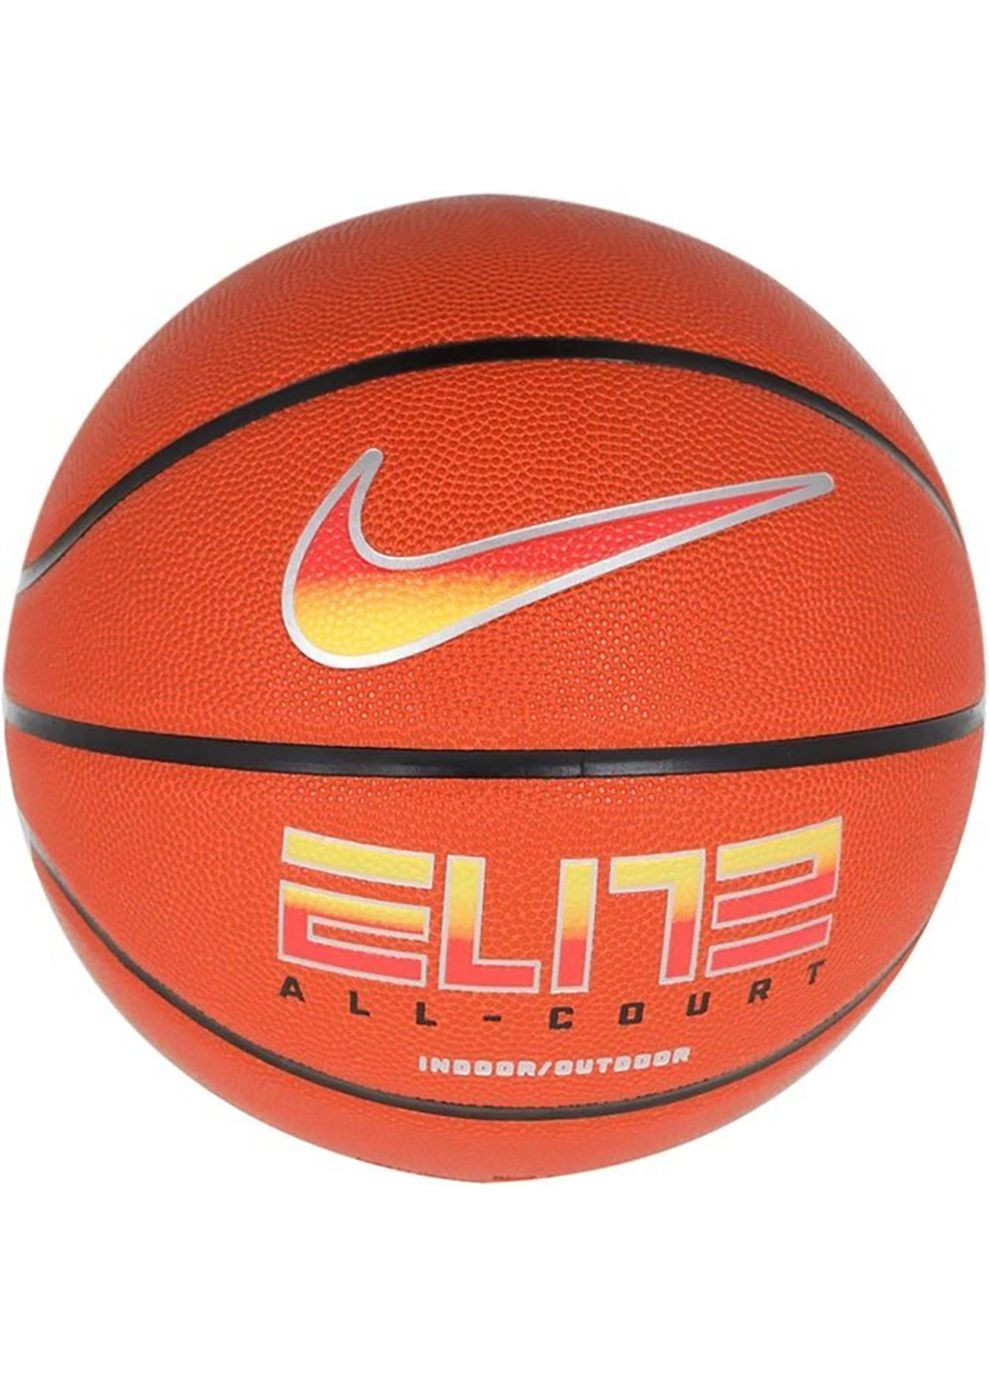 Баскетбольный Мяч ELITE ALL COURT 8P 2.0 DEFLATED оранжевый Уни 7 Nike (268747453)